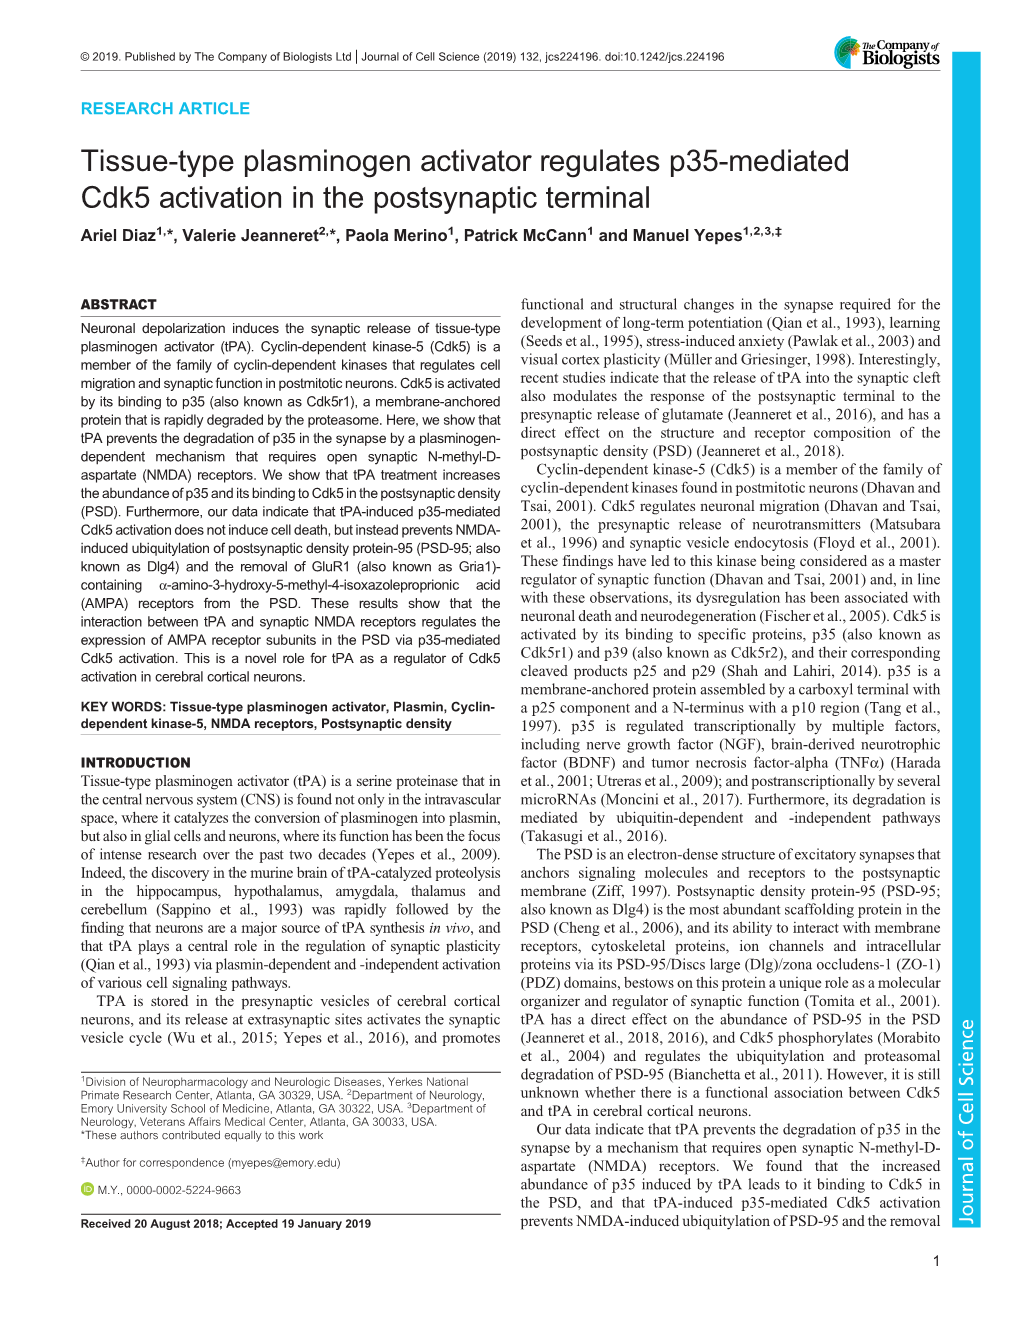 Tissue-Type Plasminogen Activator Regulates P35-Mediated Cdk5